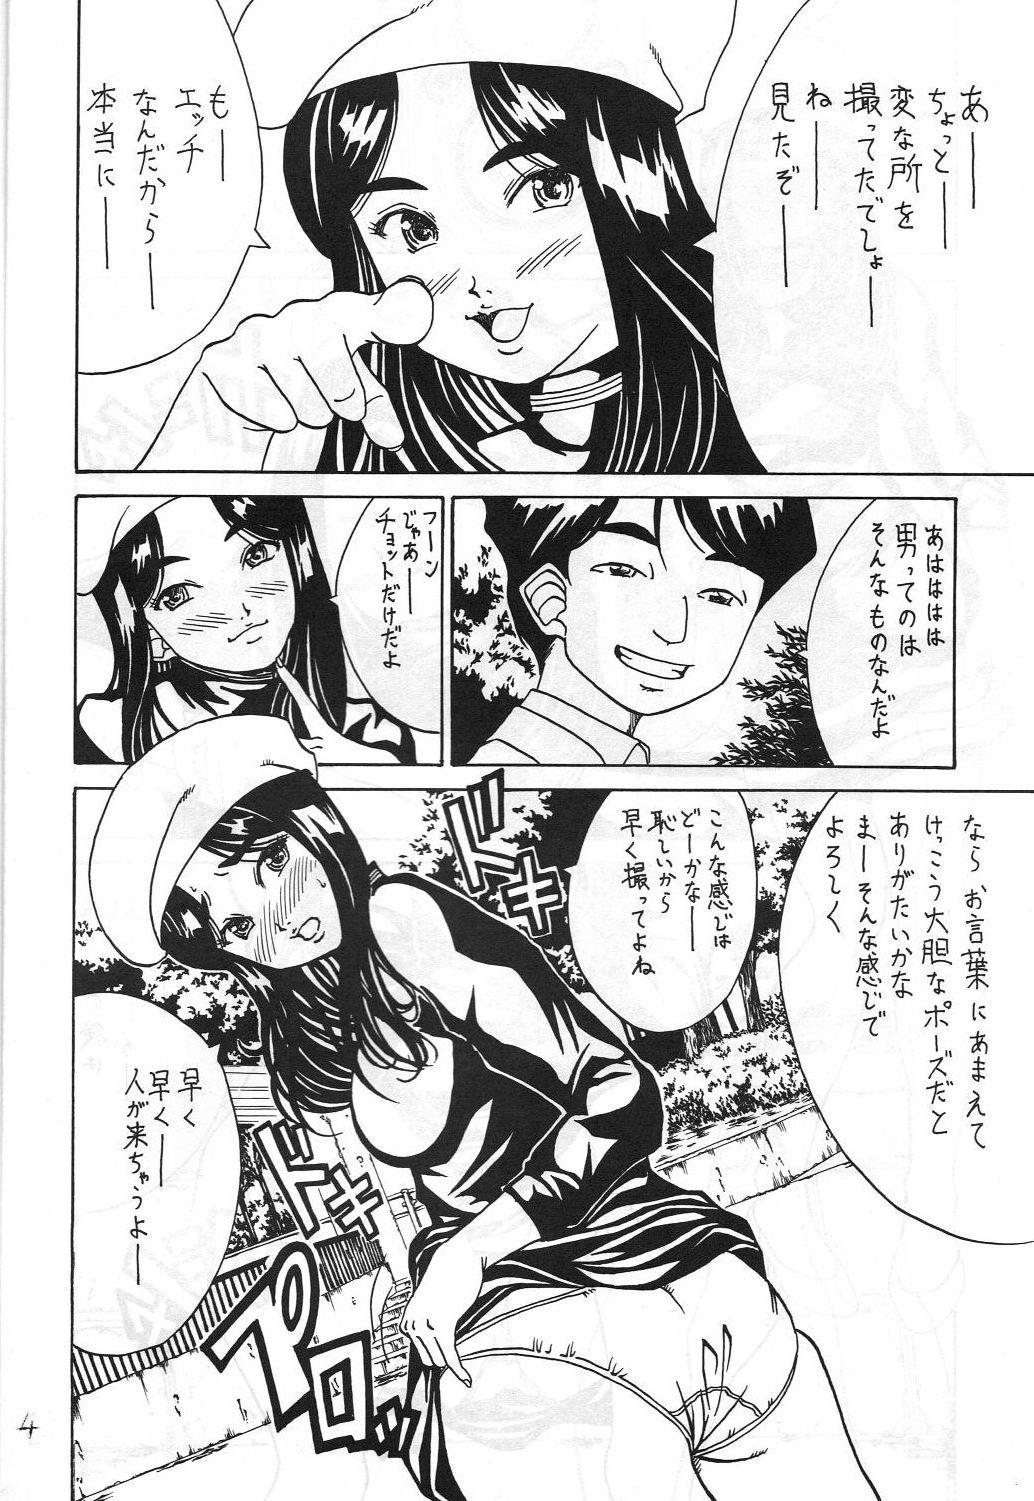 Doll Kikansha ha Ore no Johnson in my life (Mitake) Eanakuoto (Ah! Megami-sama/Ah! My Goddess) - Ah my goddess Cams - Page 5